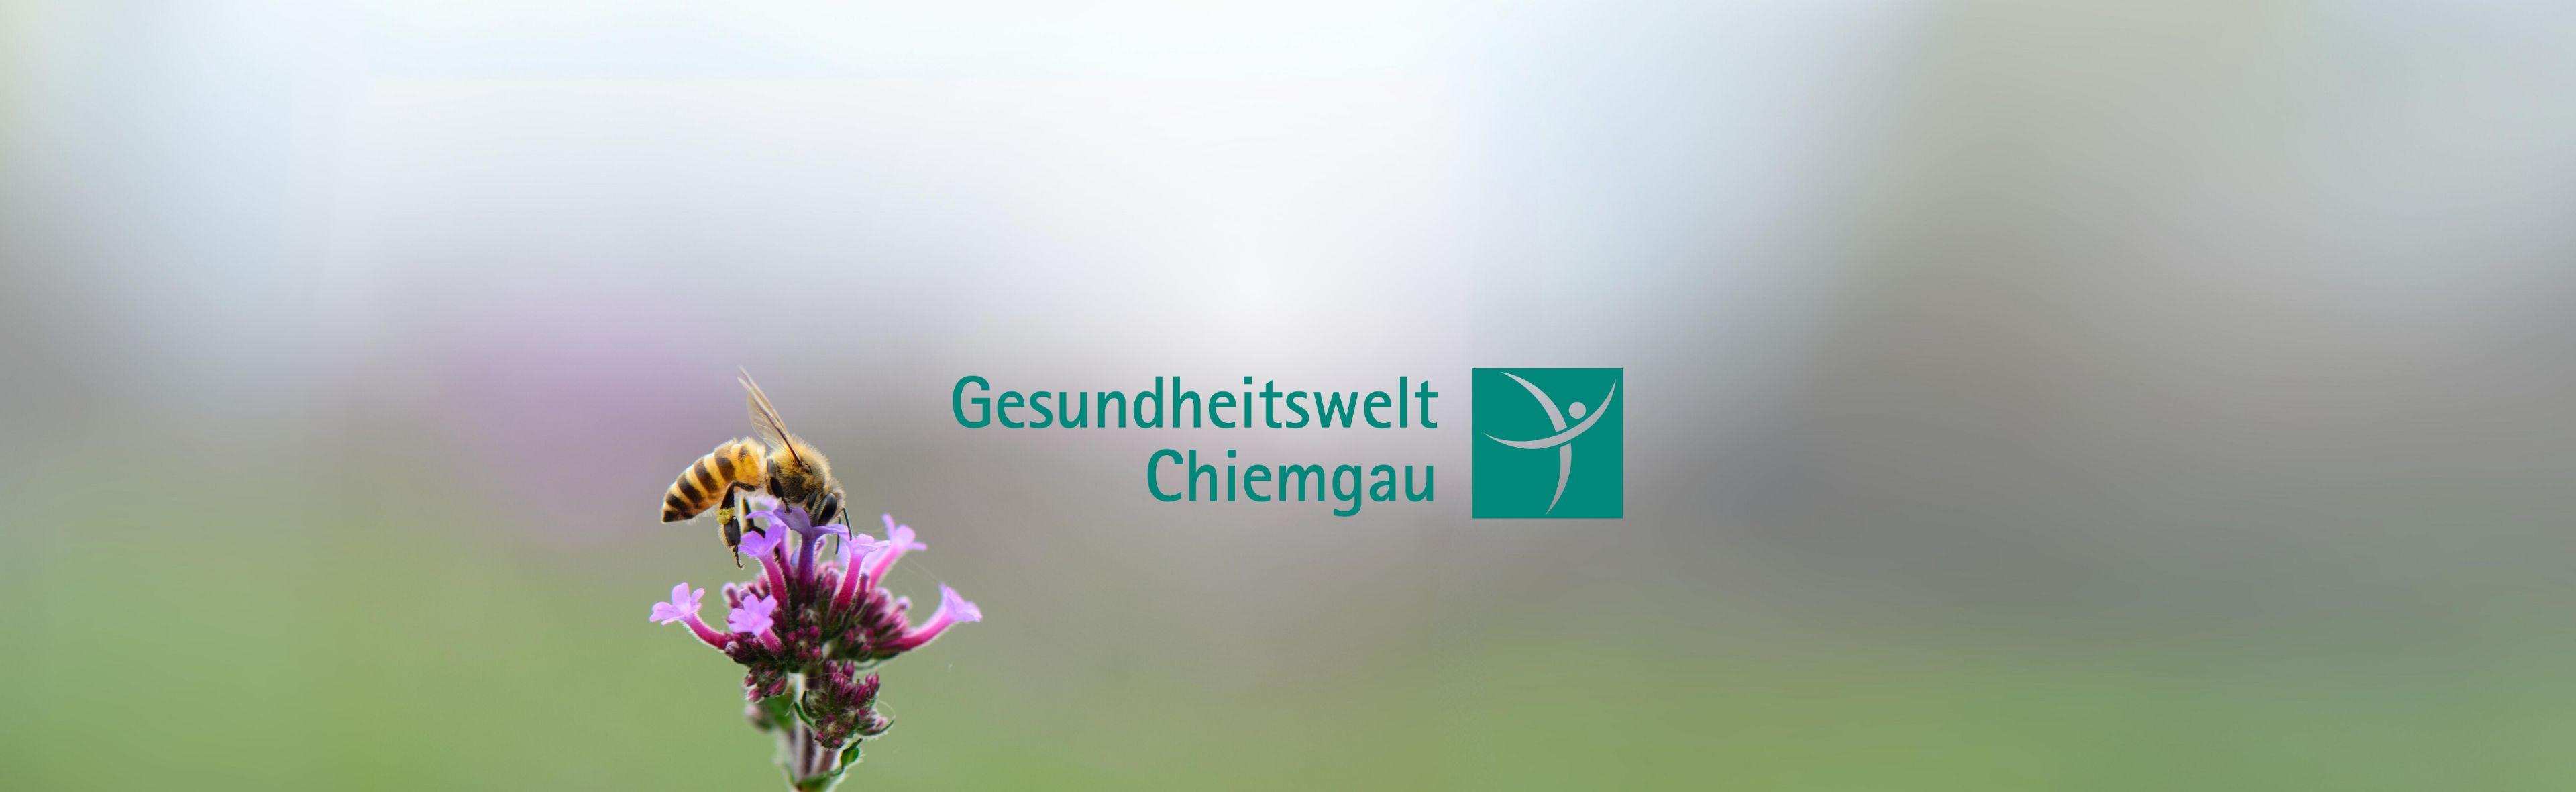 Bienenpatenschaft Gesundheitswelt Chiemgau